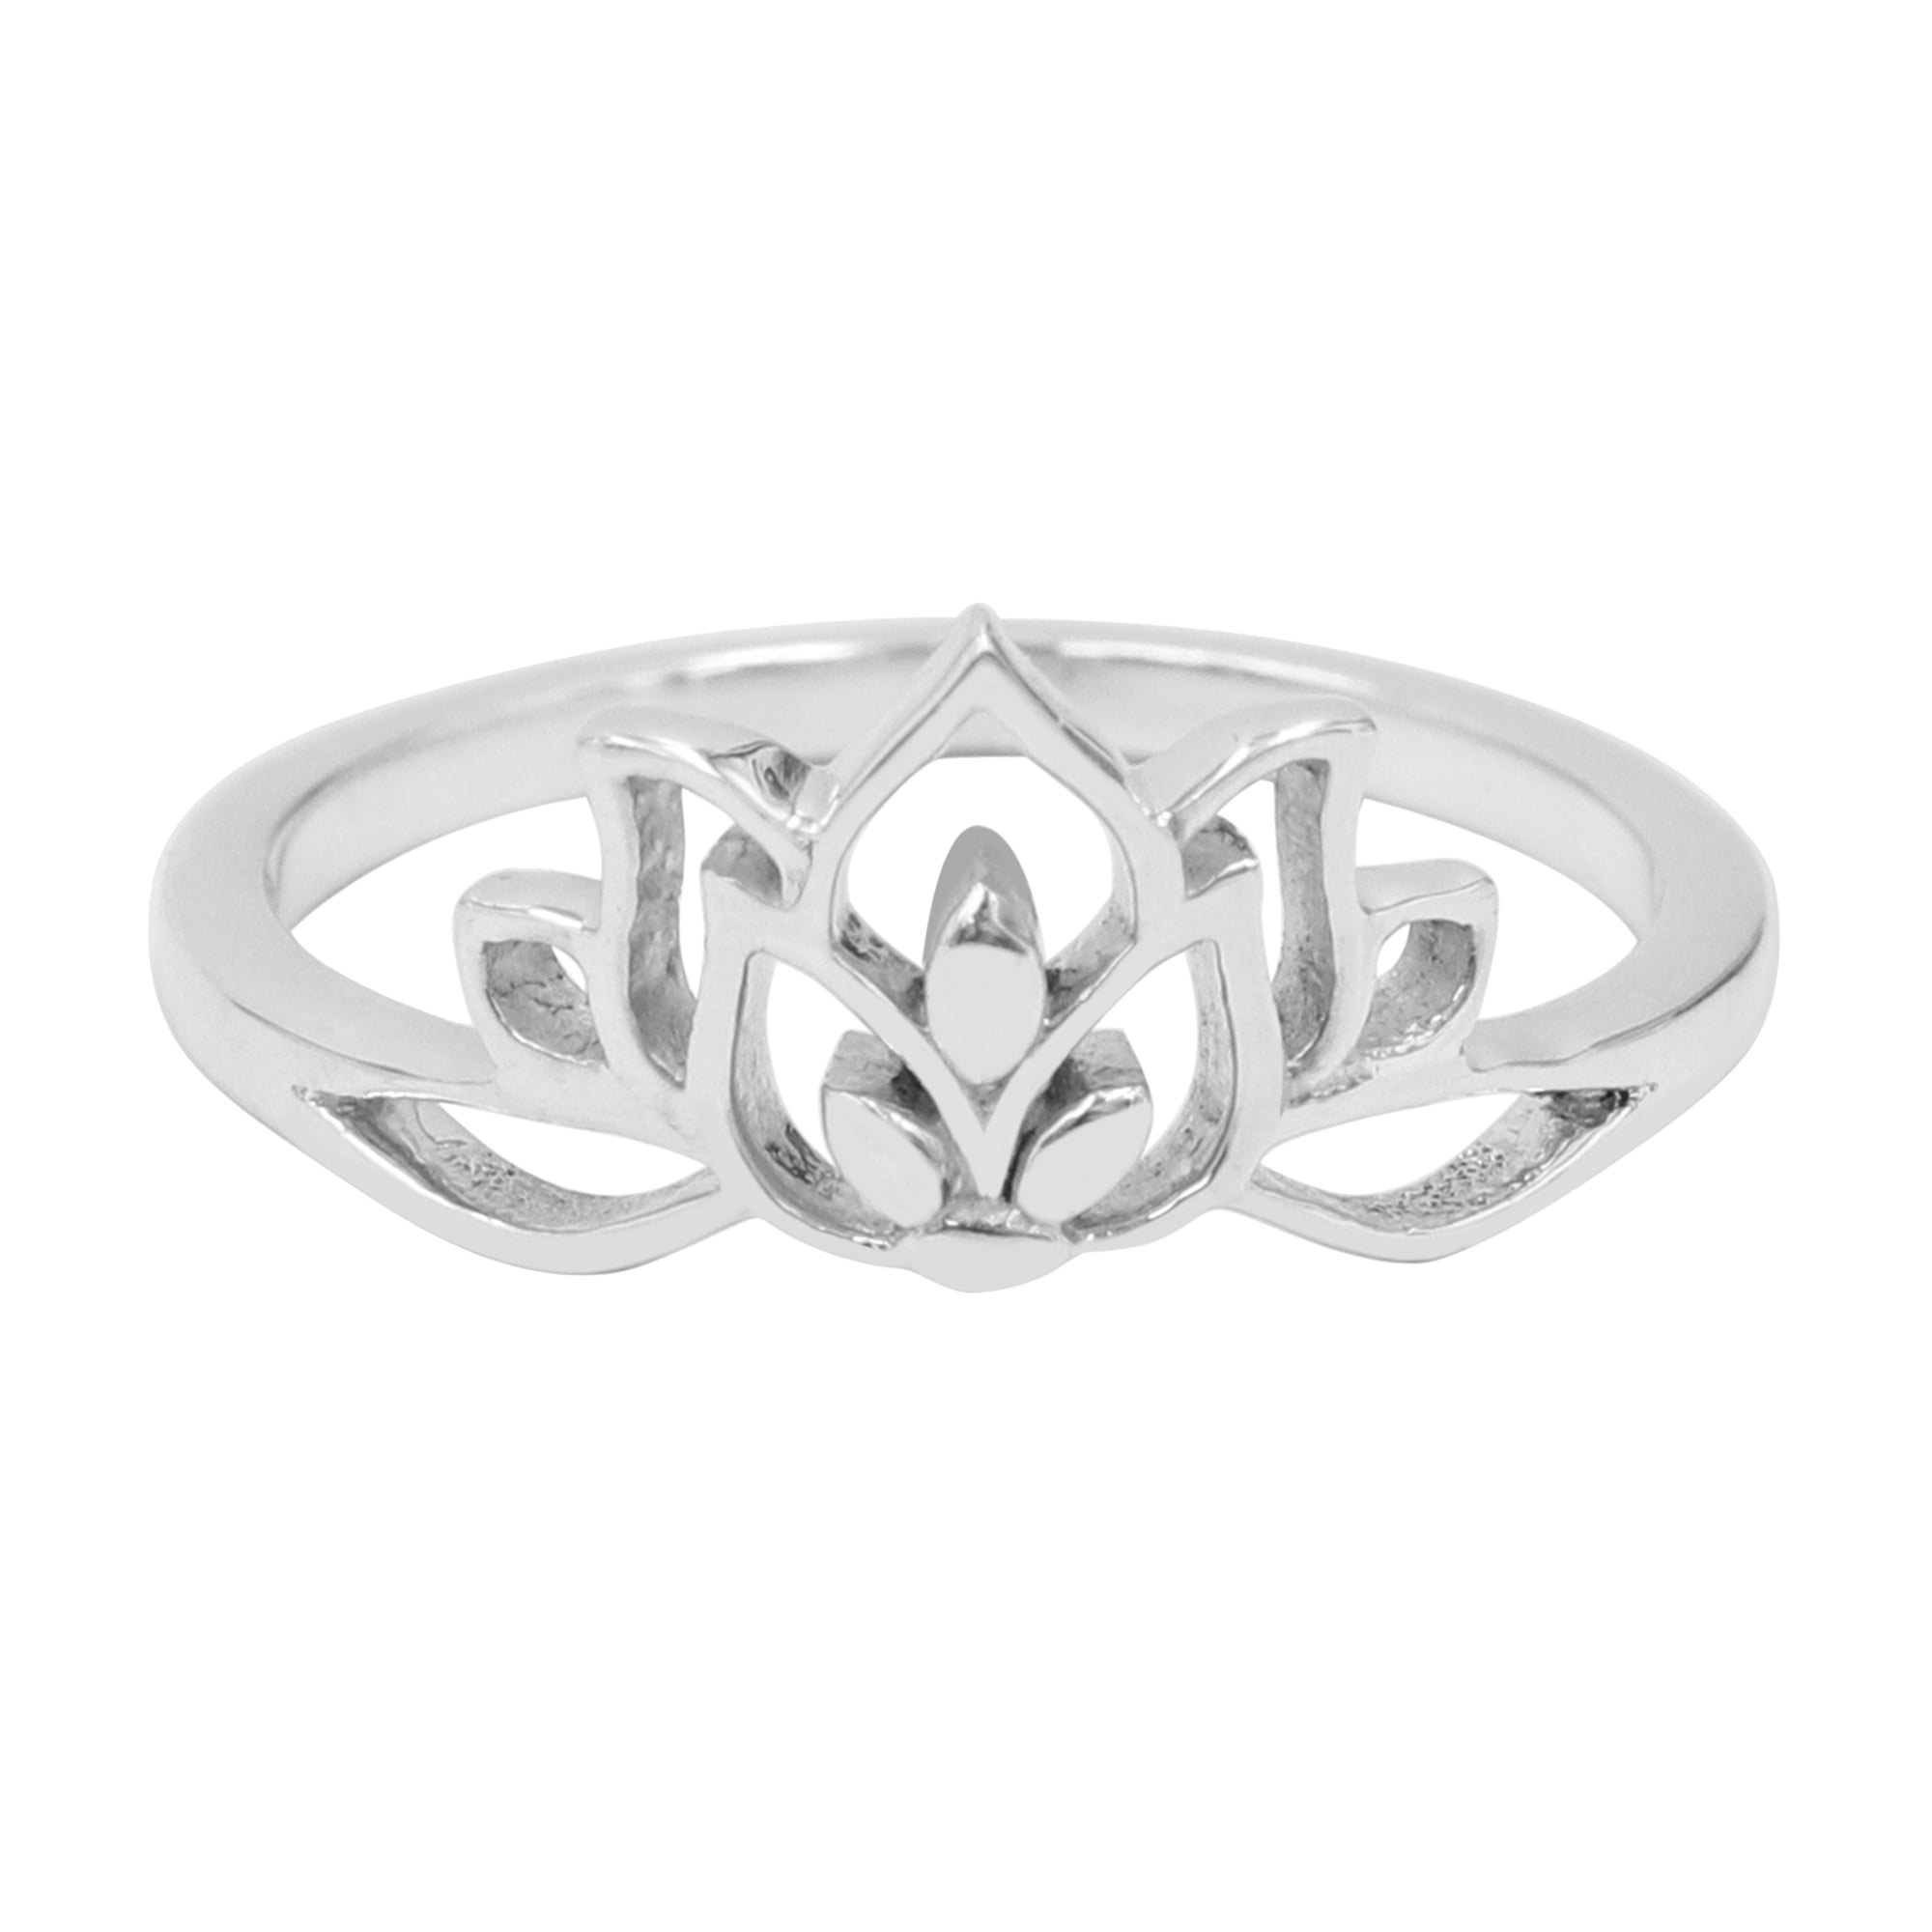 Buy Silver lotus ring Online at Unniyarcha